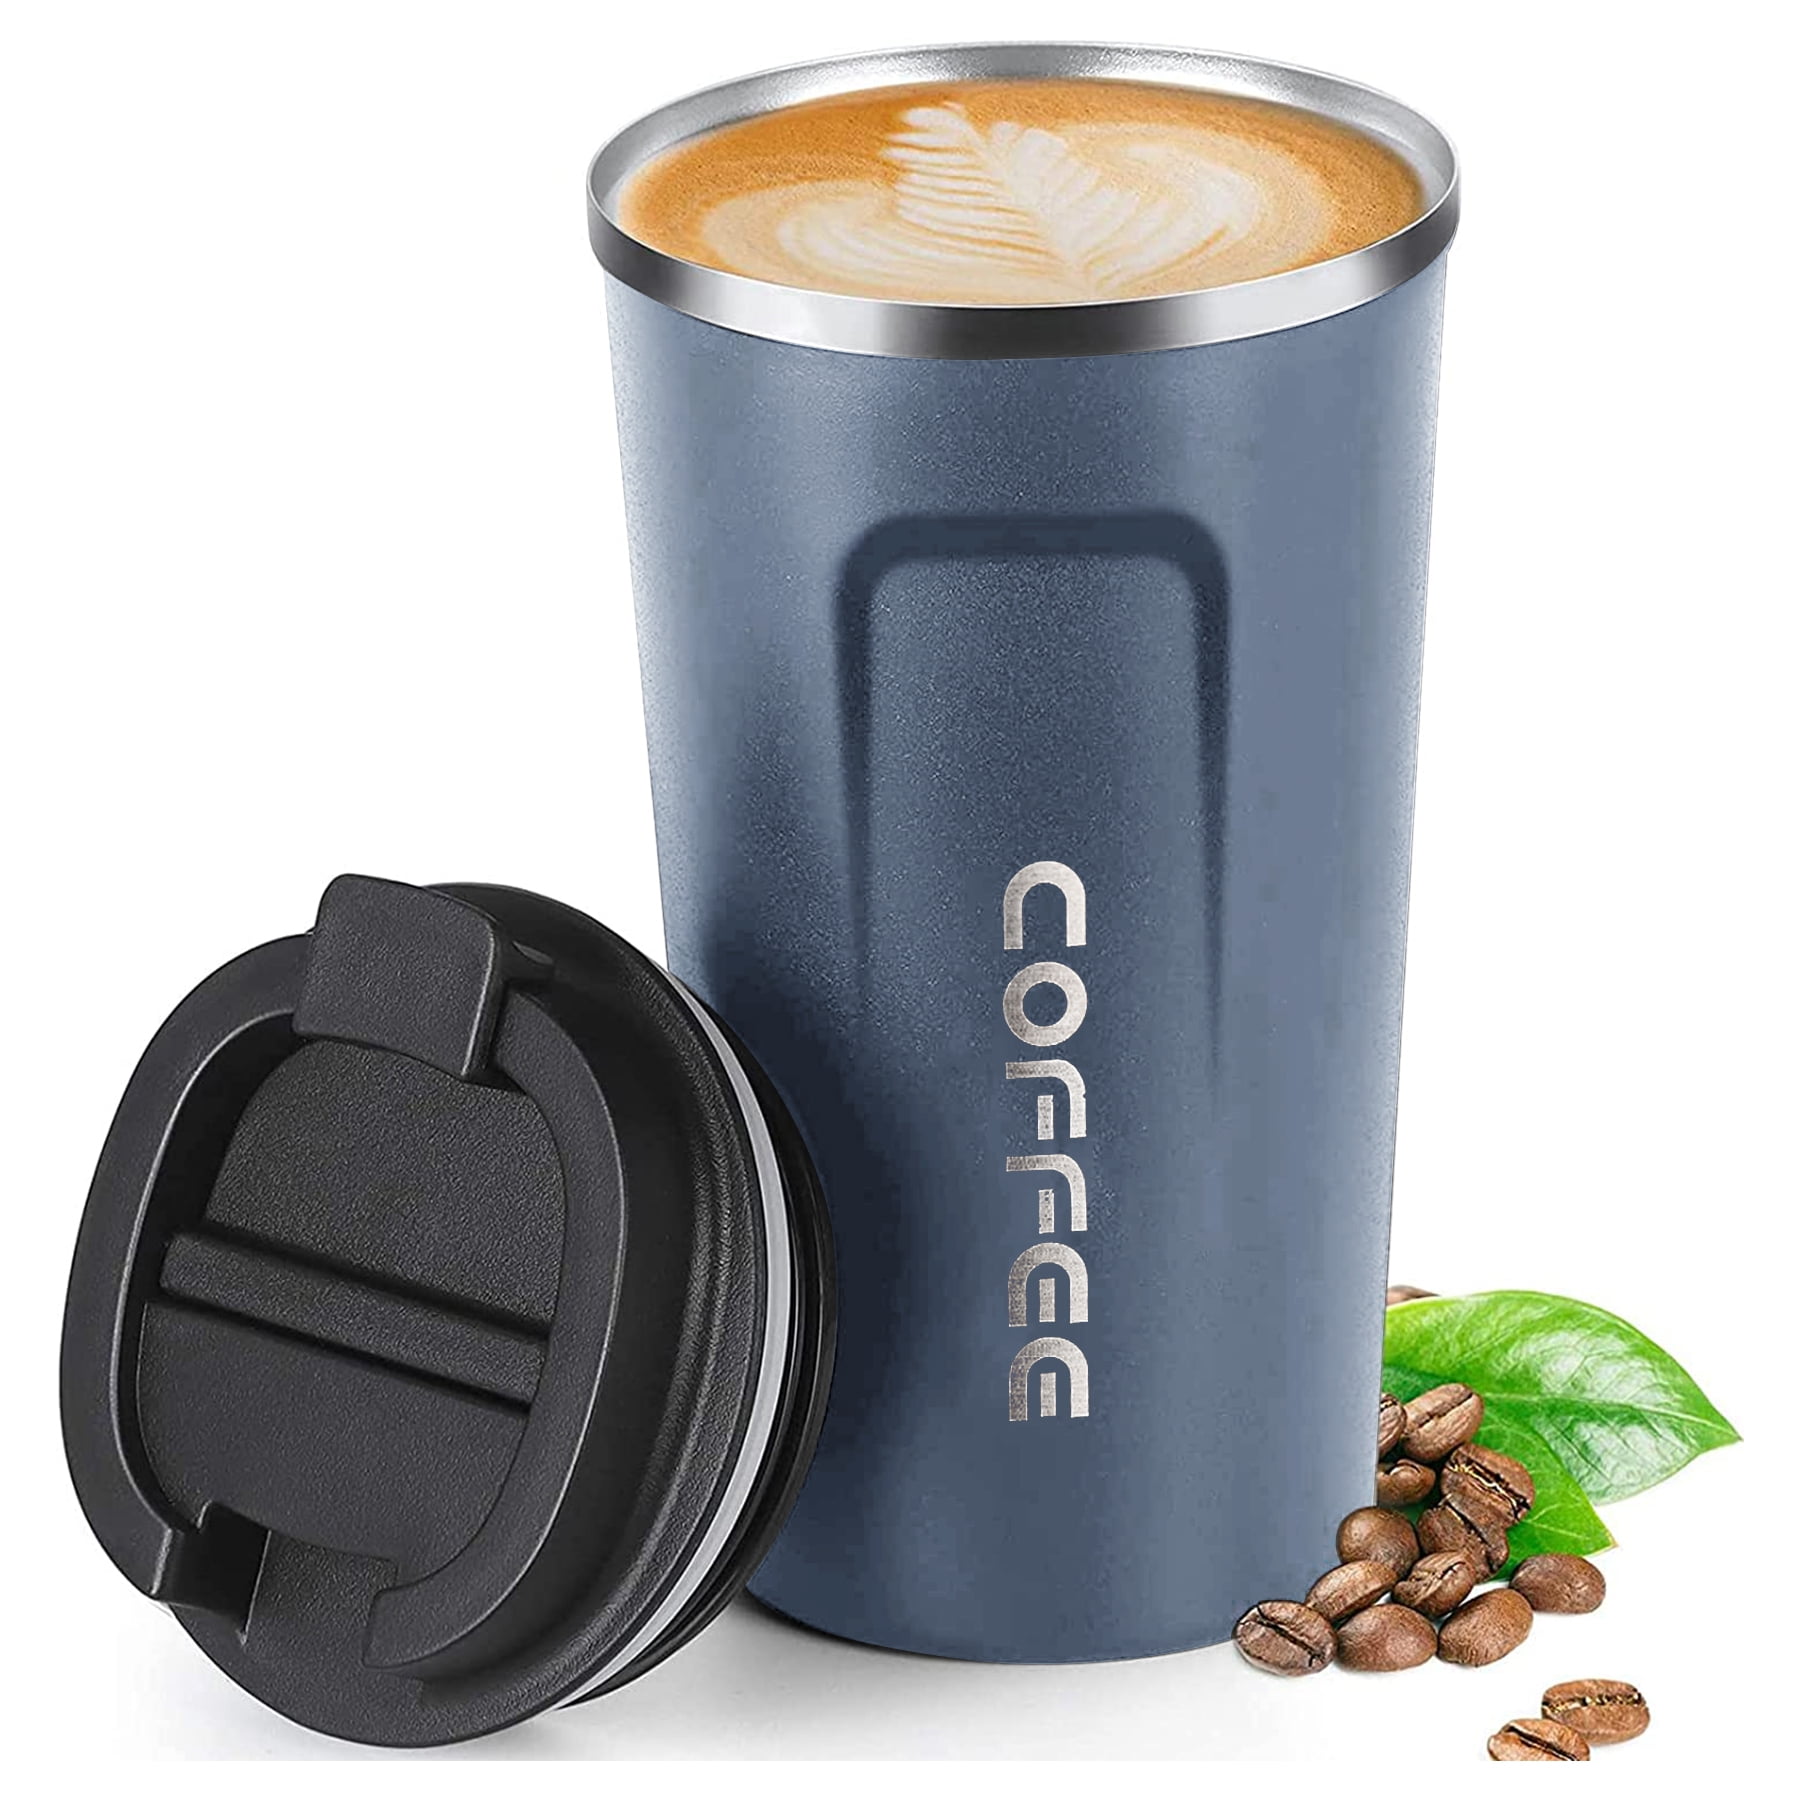 Thermal Mug, Coffee Mug Thermal with Leak-Proof Lid, Thermal Mug Insulated Mug, 18 oz/510 ml Stainless Steel Travel Mug, Coffee-To-Go Mug for Hot and